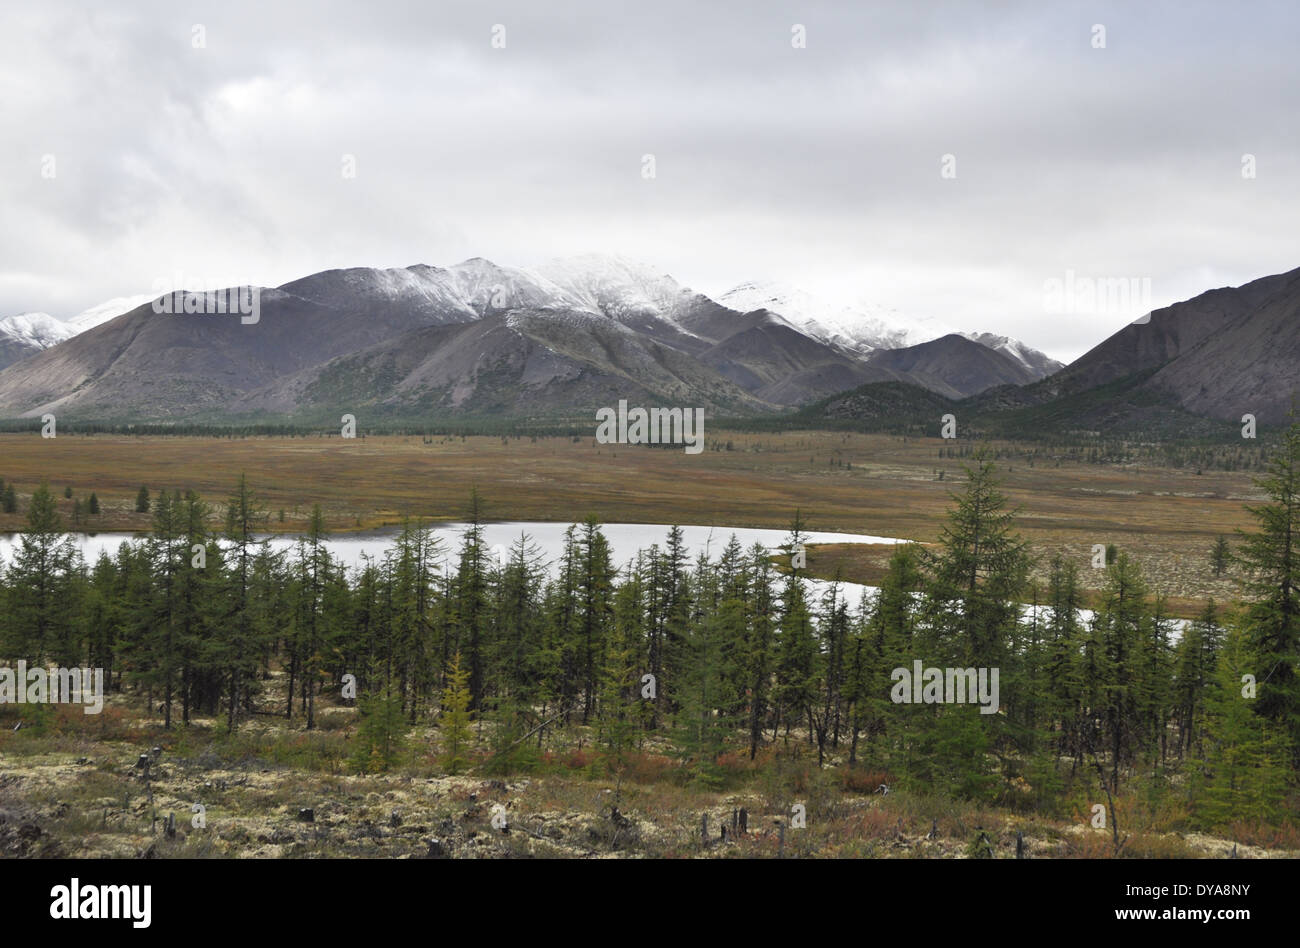 Herbstliche Tundra auf dem Hintergrund der Berge in Jakutien. Trübe Landschaft im Bereich Strecke "Kolyma", Yakutsk - Magadan. Russland. Stockfoto